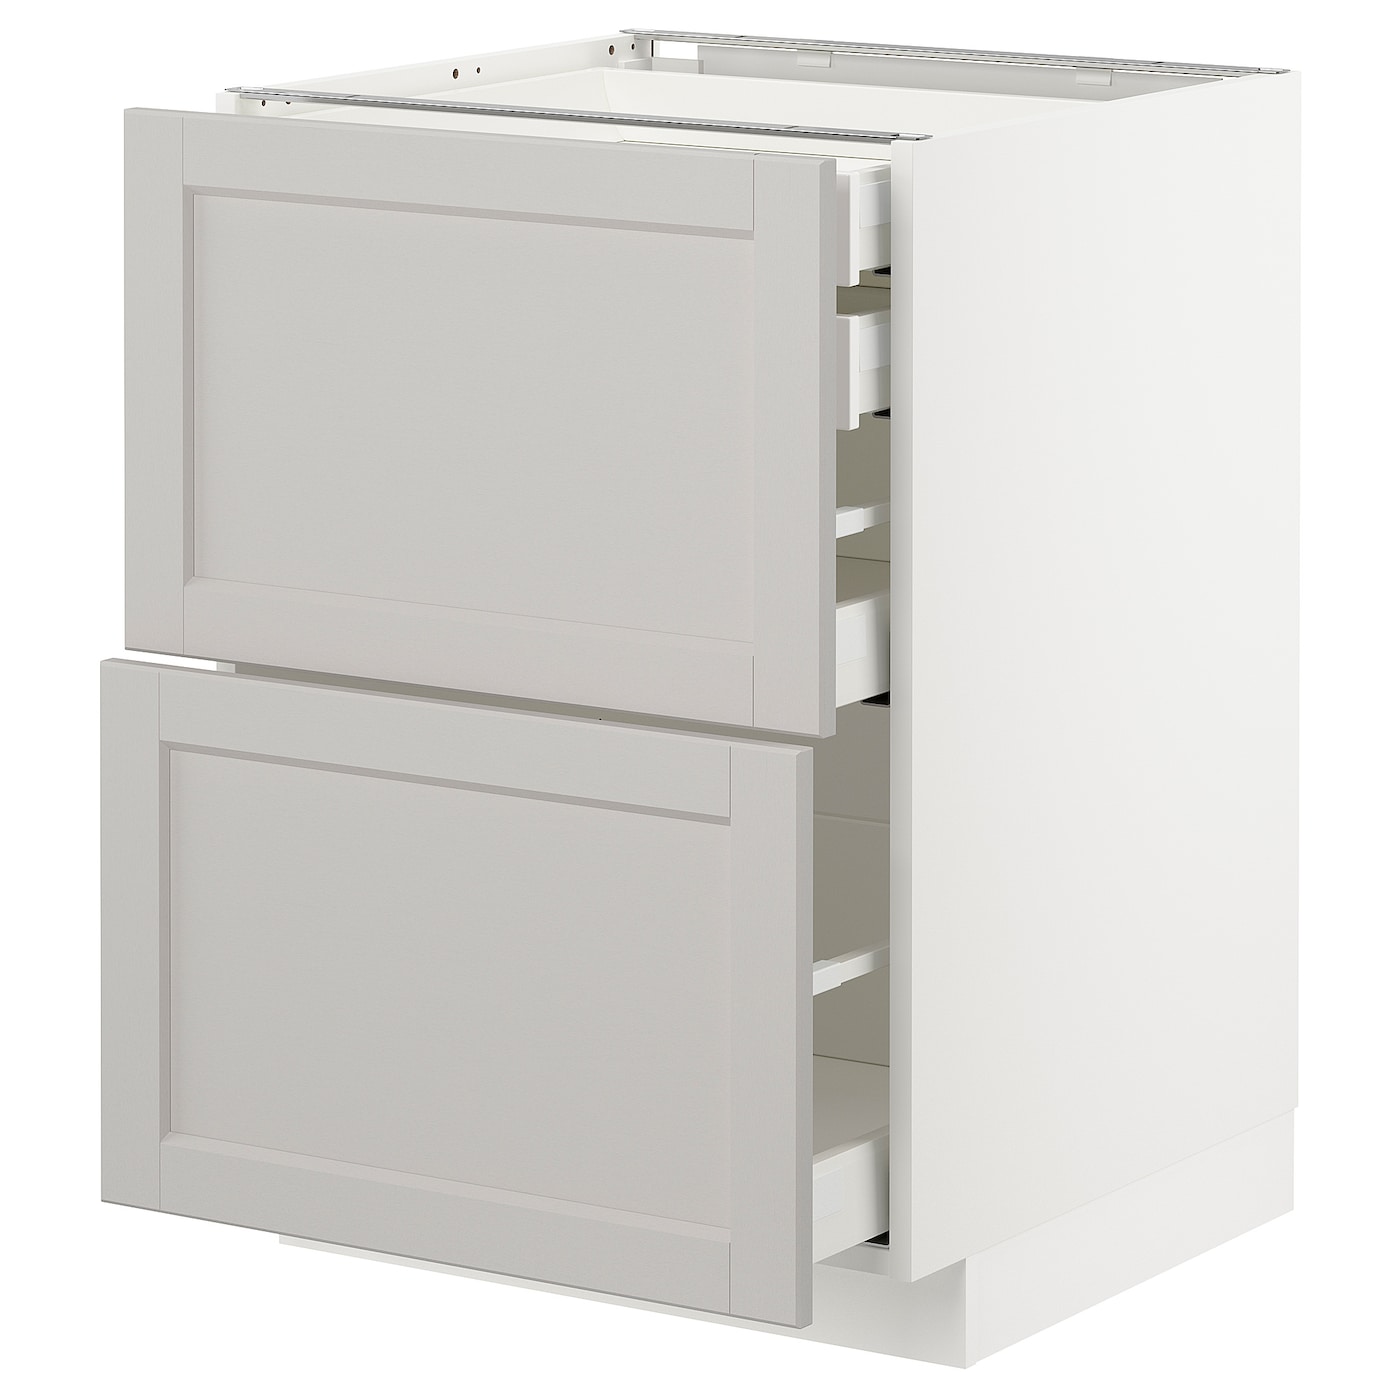 Напольный шкаф  - IKEA METOD MAXIMERA, 88x61,9x60см, белый/светло-серый, МЕТОД МАКСИМЕРА ИКЕА